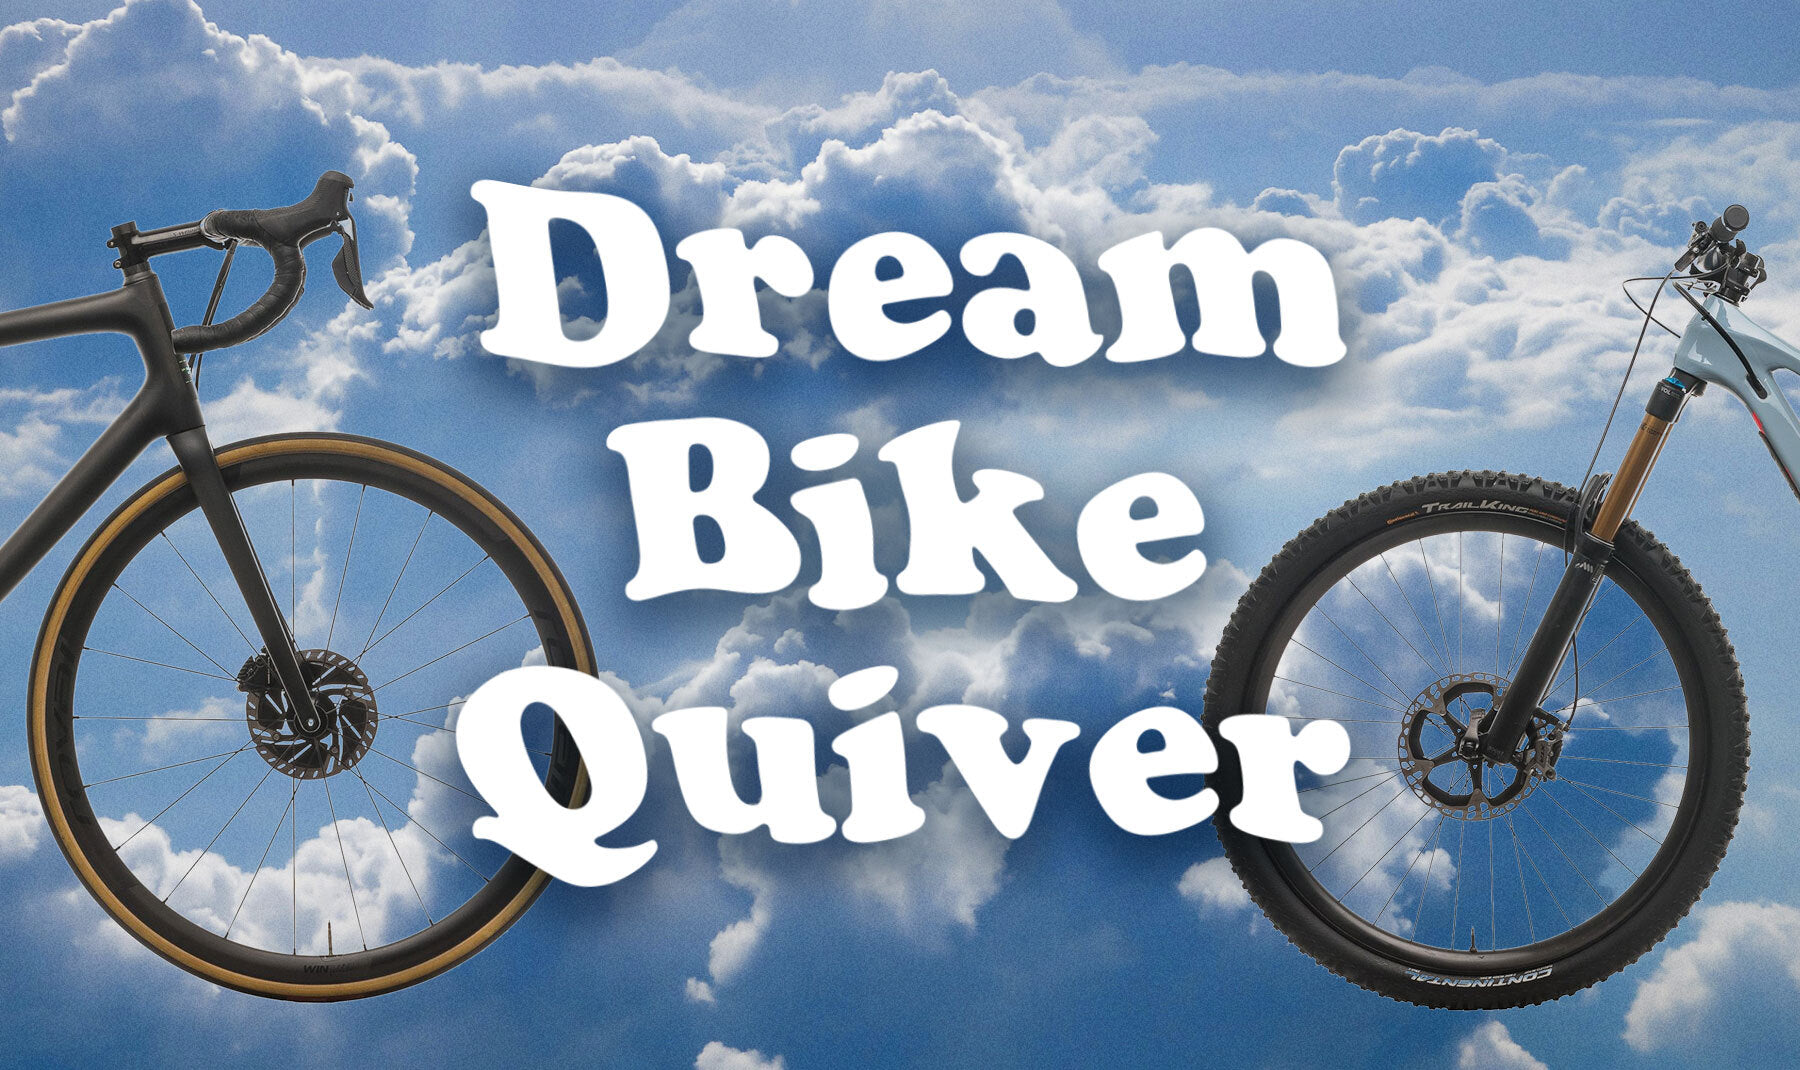 The Dream Bike Quiver